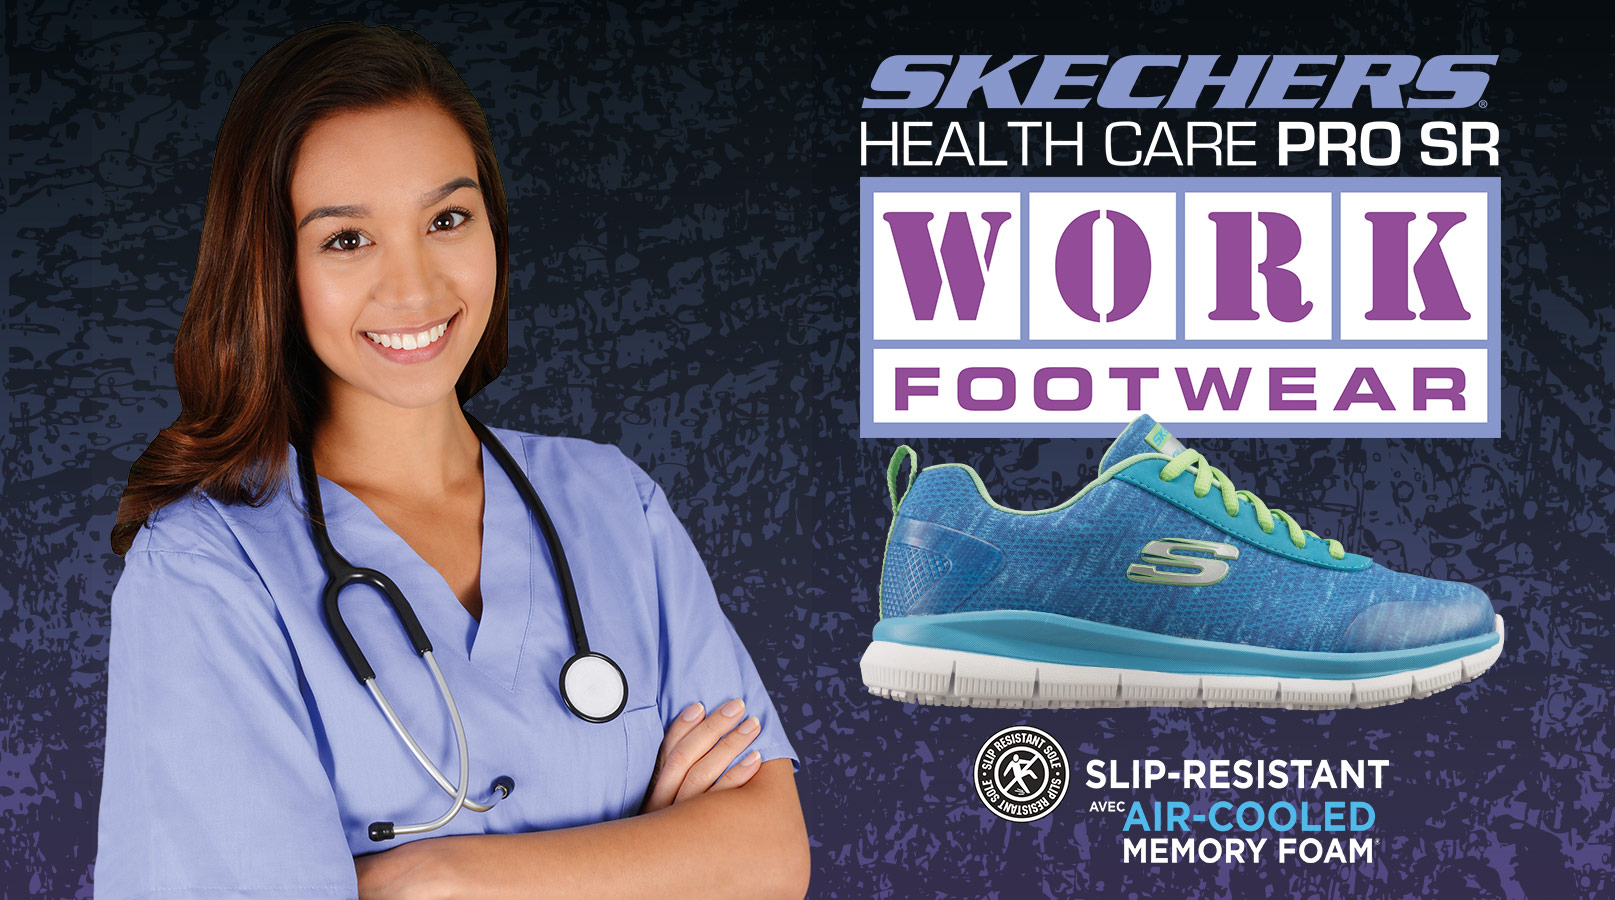 skechers healthcare pro sr work footwear